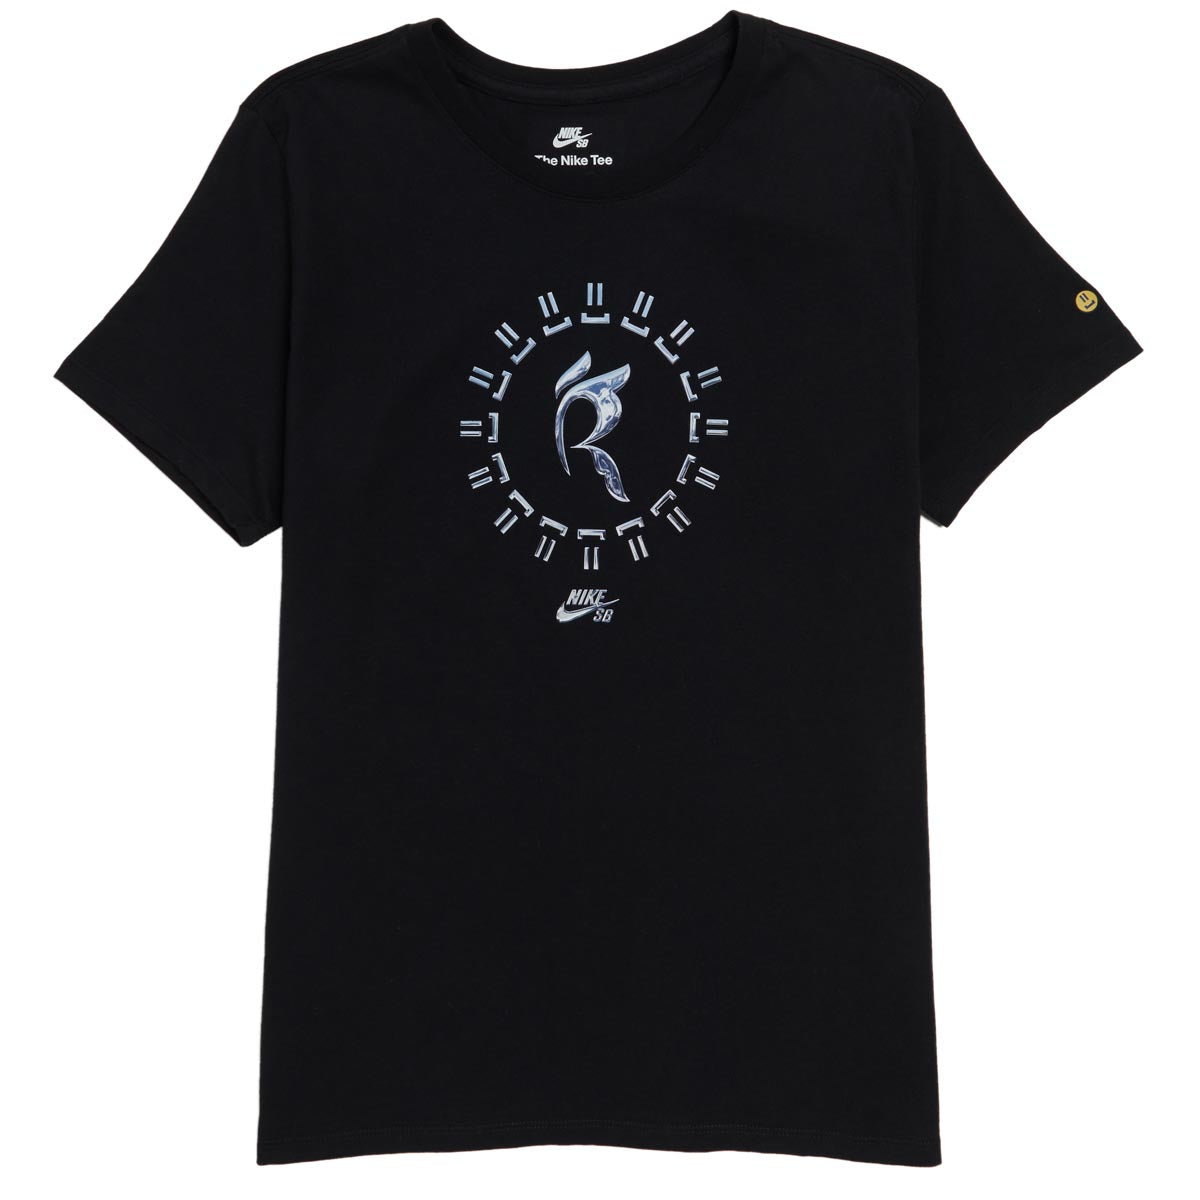 Nike SB Womens x Rayssa Leal Premium T-Shirt - Black image 1